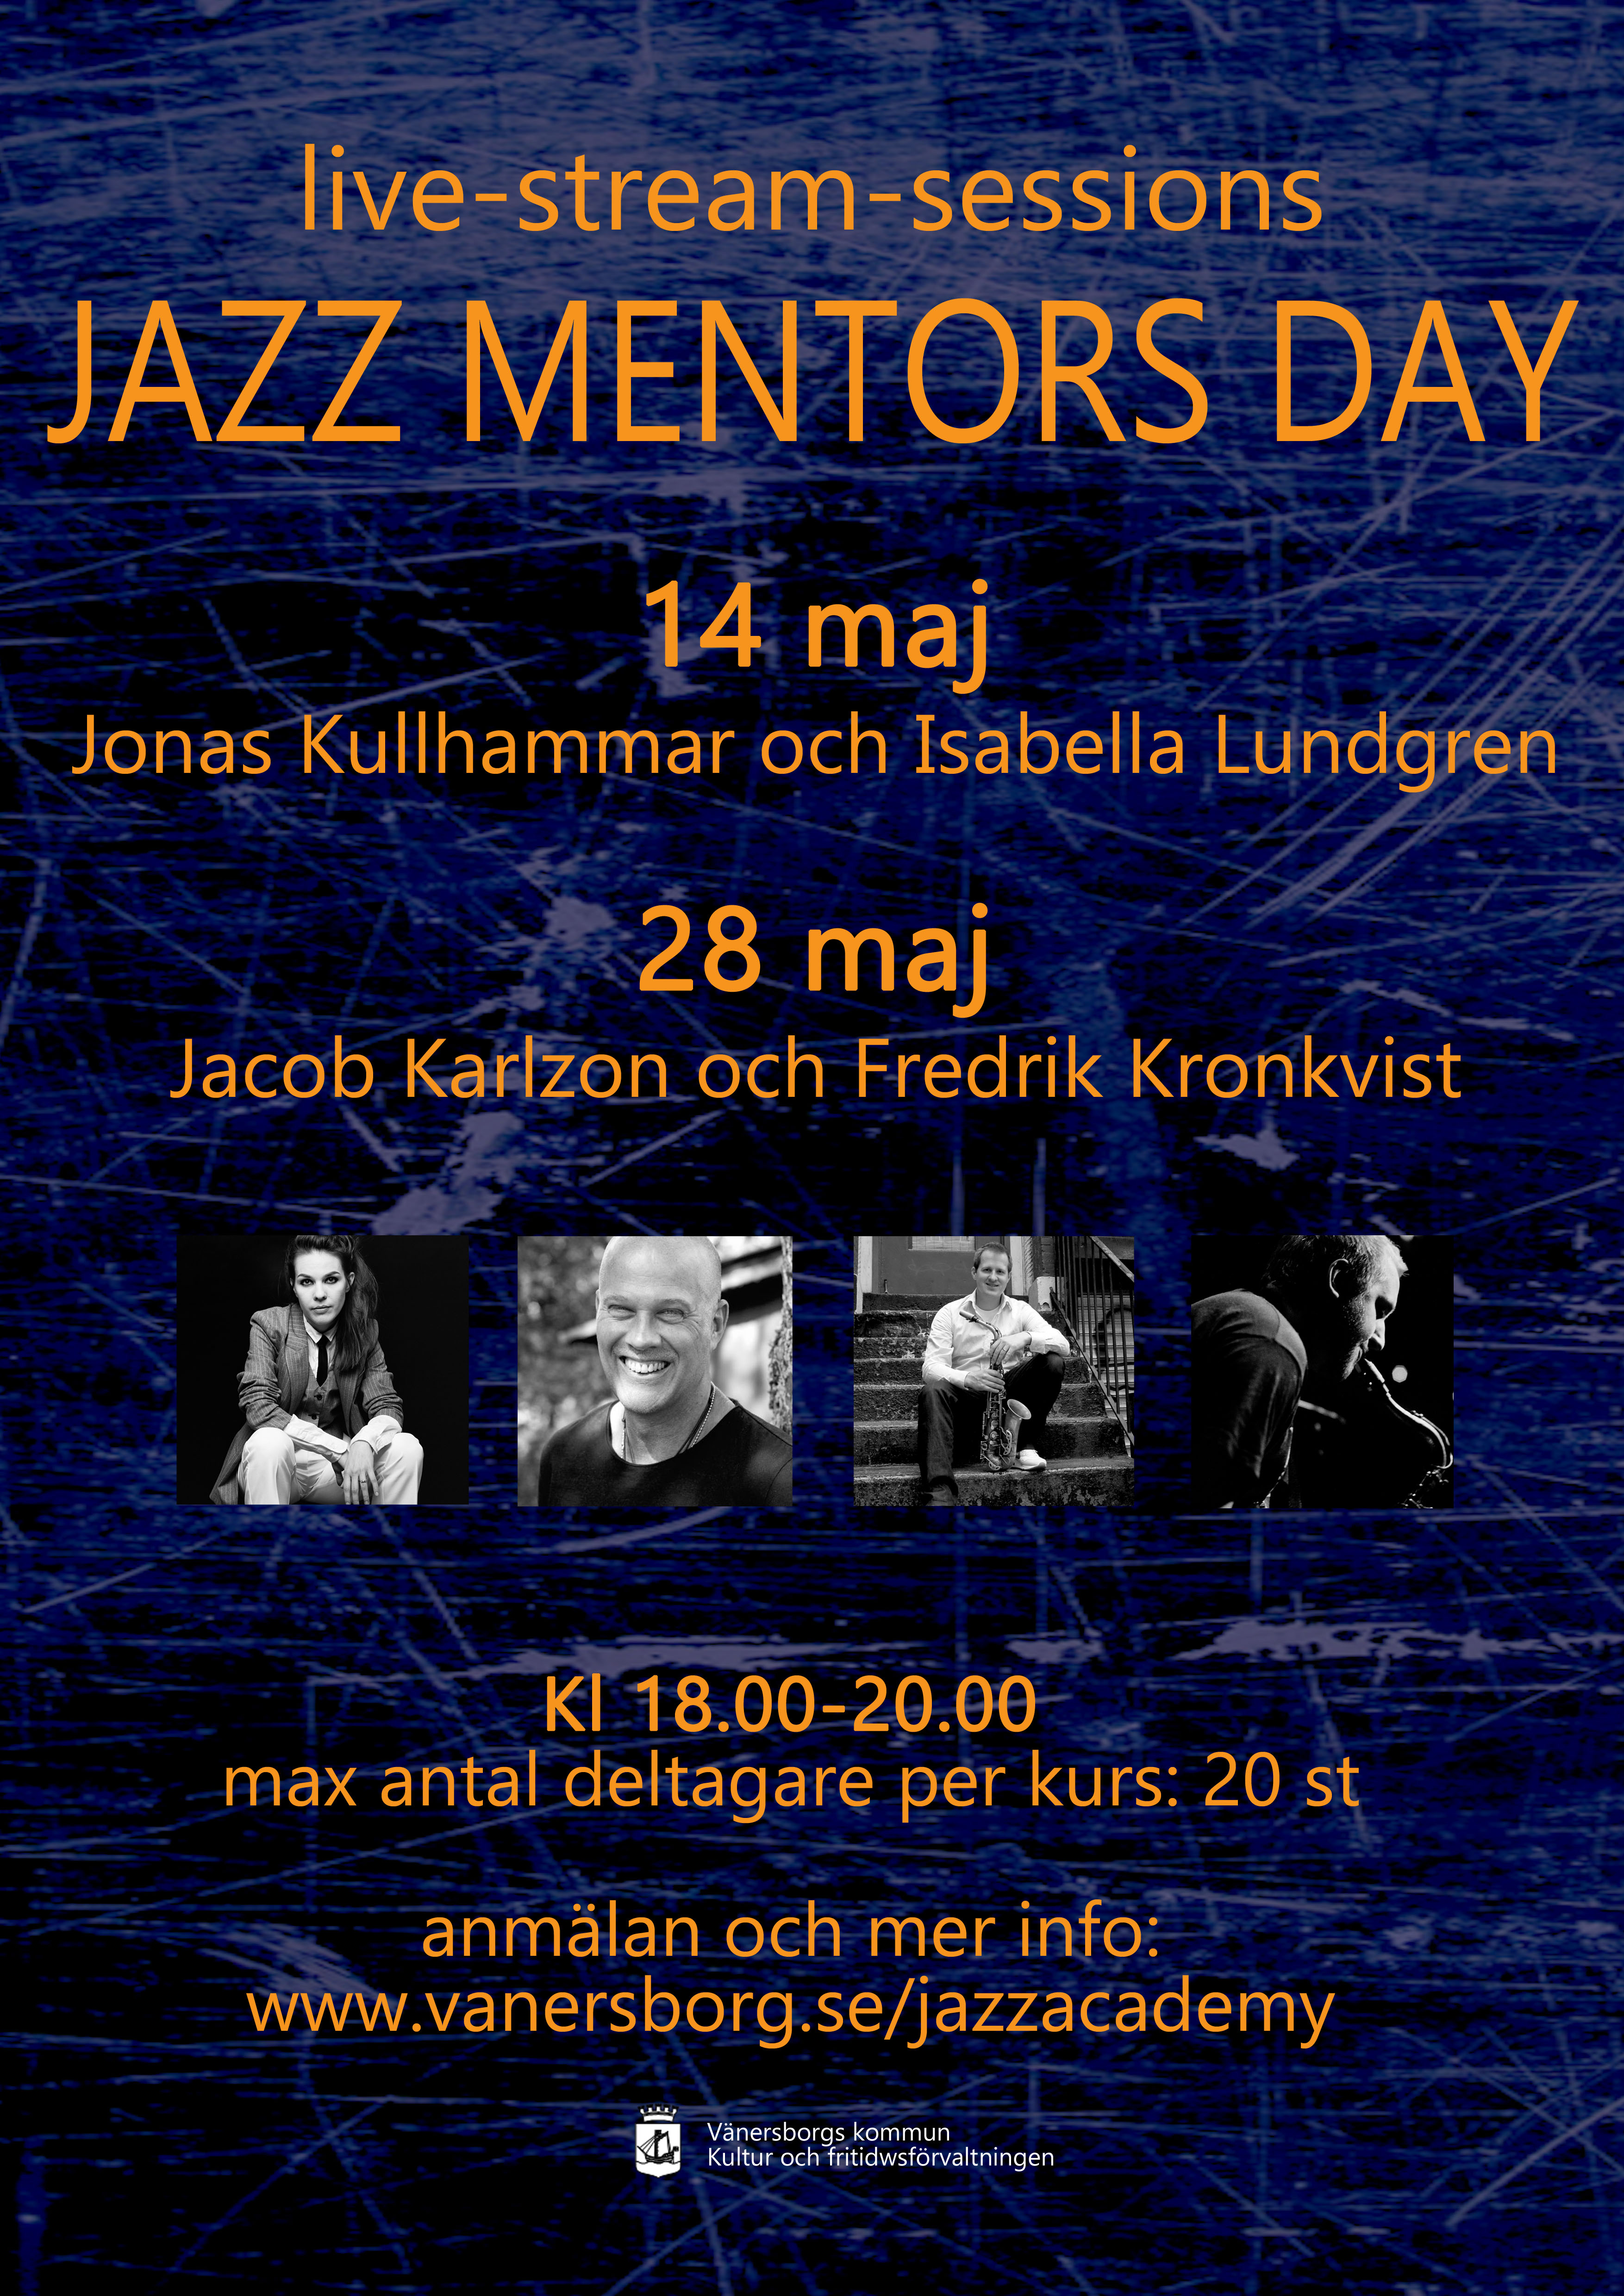 Bildbeskrivning: Affisch för premiären av Jazz Mentors Day-kurserna som hölls online 14 och 28 maj 2020. Gäster 14 maj var sångerskan Isabella Lundgren och saxofonisten Jonas Kullhammar. Gäster 28 maj var pianisten Jacob Karlzon och saxofonisten Fredrik Kronkvist.